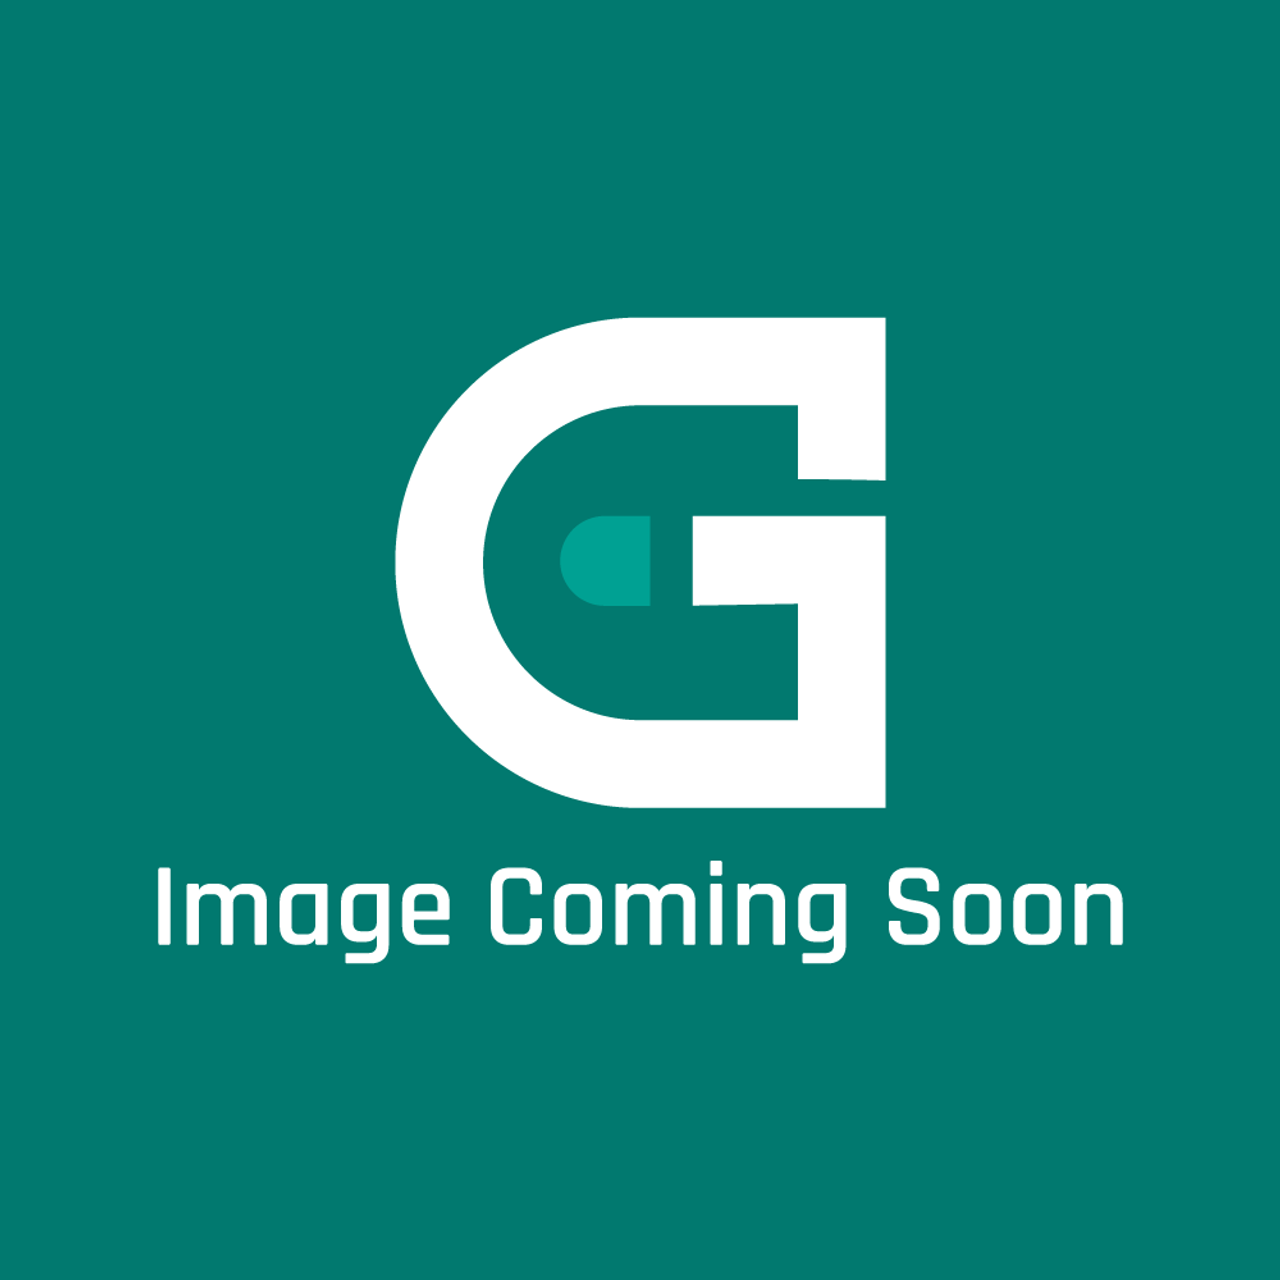 Star Mfg 2IY6110 - Gasket - Image Coming Soon!